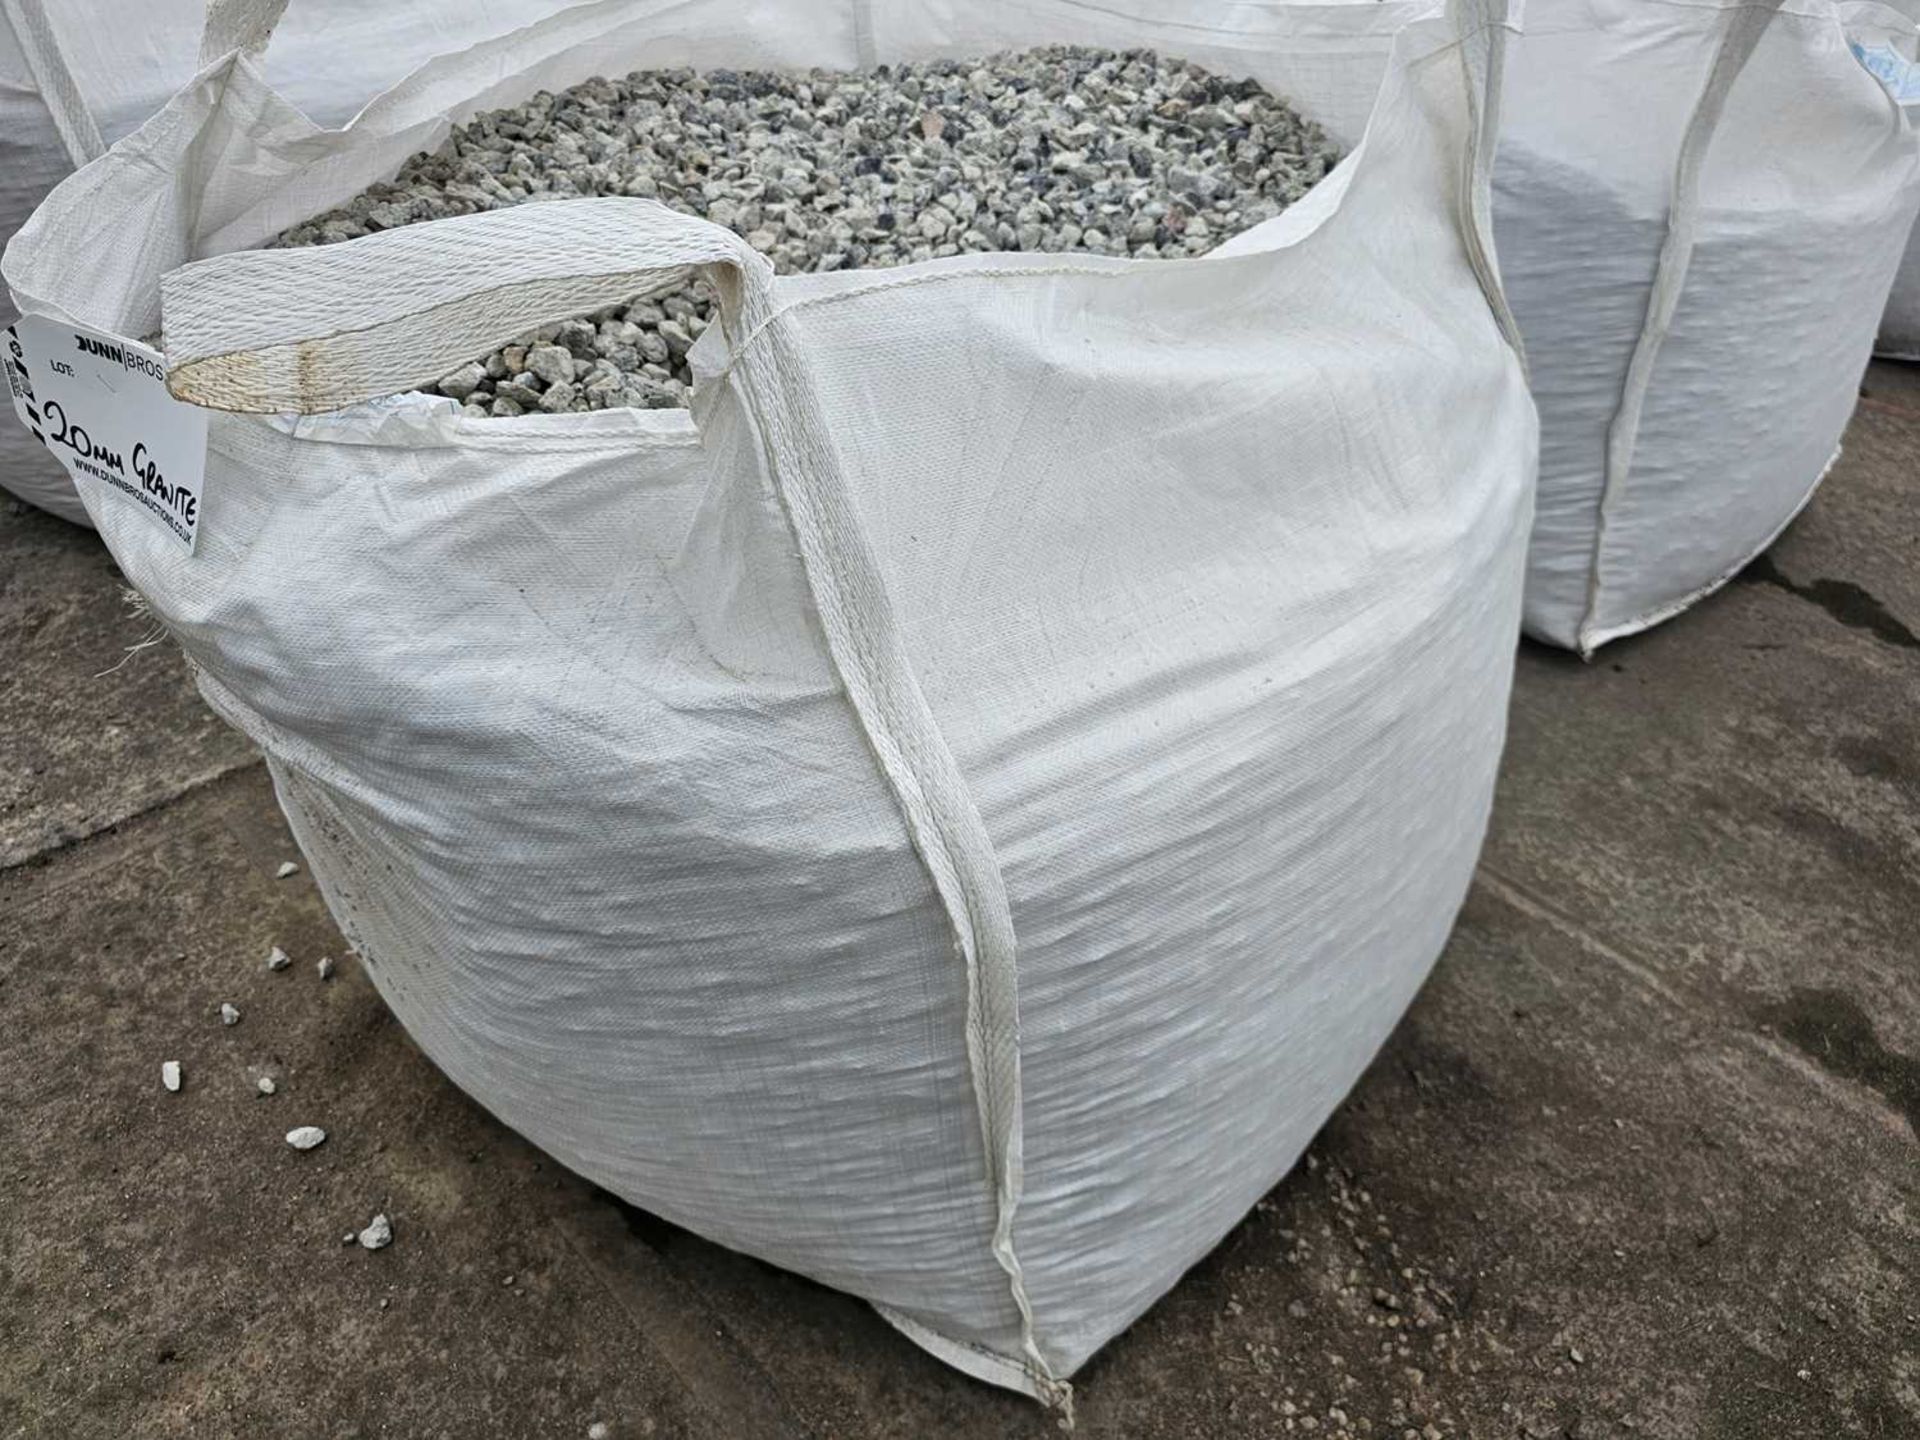 Bulk Bag of 20mm Clean Granite - Image 2 of 2